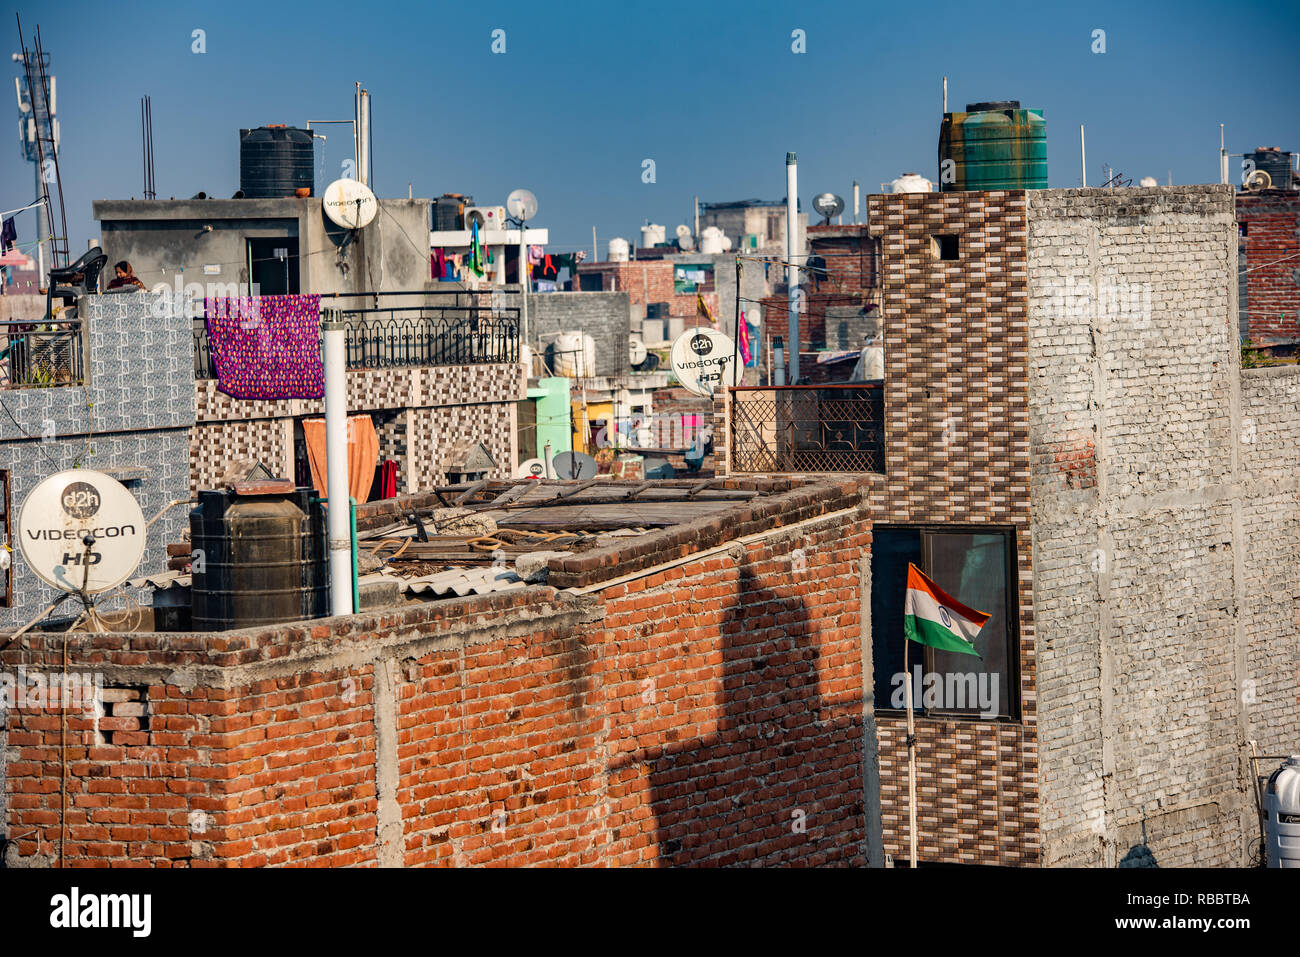 Une scène sur le toit ensoleillée à JJ Colonie Madanpur Khadar, New Delhi faire un paysage de satellites et les réservoirs d'eau avec des plats de séchage des vêtements. Banque D'Images